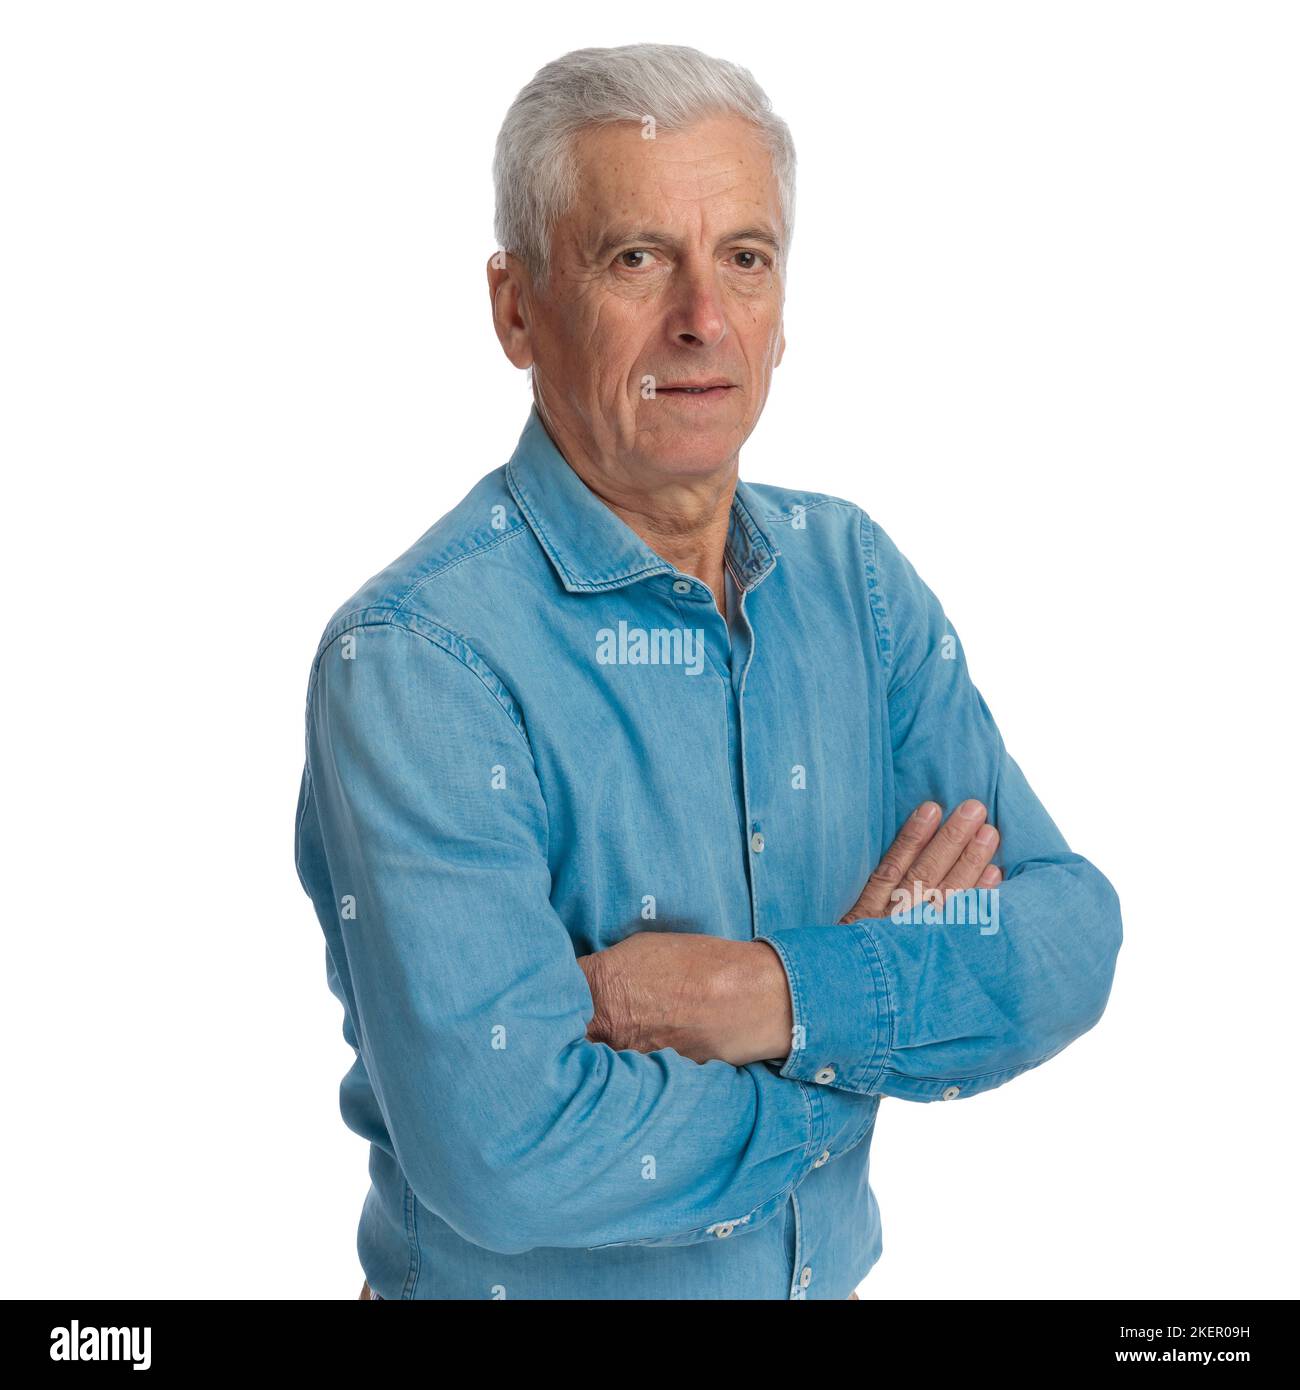 Portraitbild des selbstbewussten alten Mannes in Denim-Hemd, das Arme zusammenklappte und vor weißem Hintergrund im Studio posierte Stockfoto